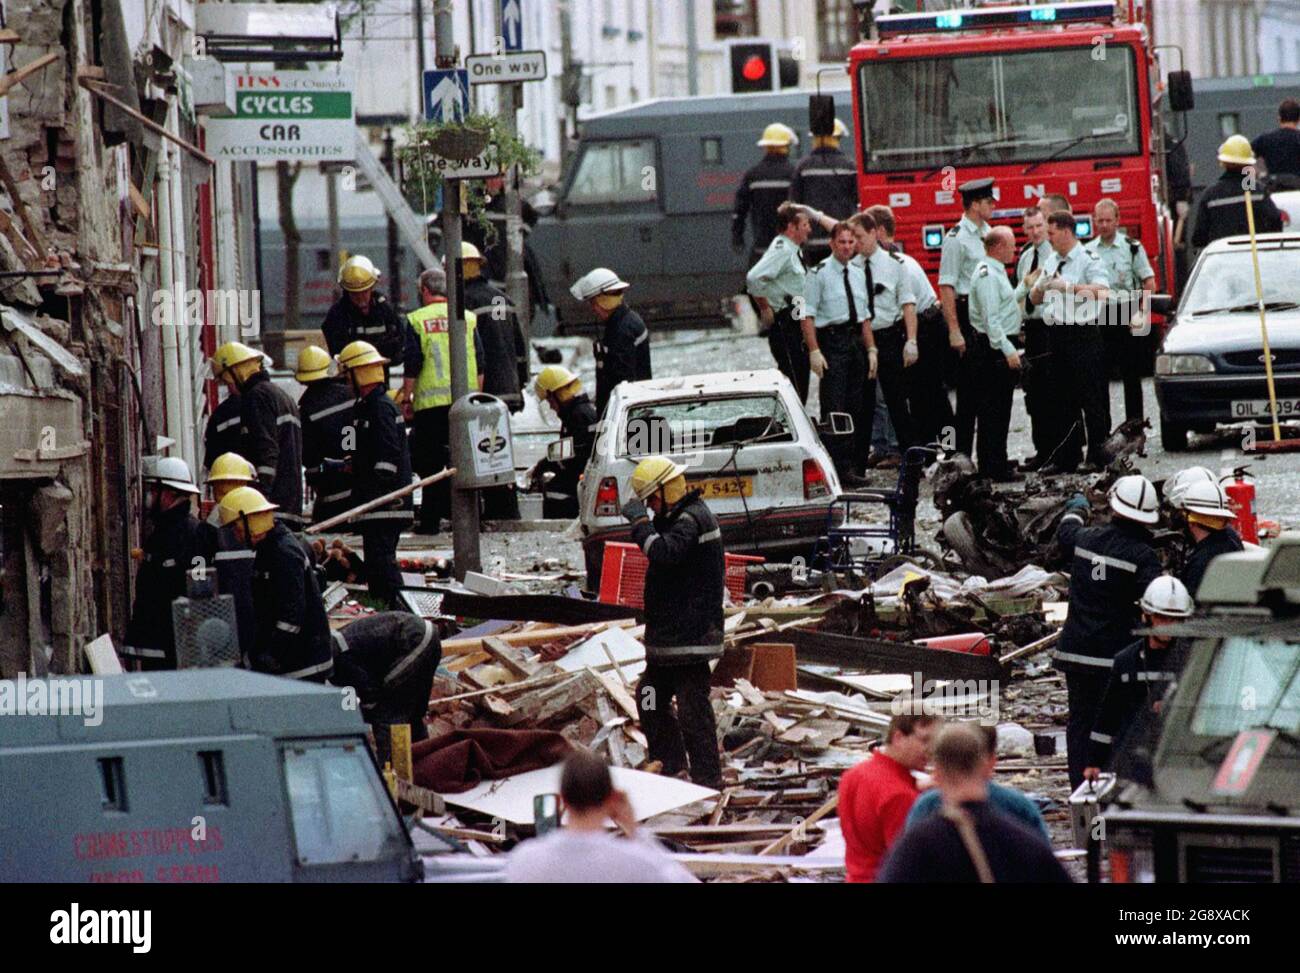 Royaume-Uni SEULEMENT PHOTO du dossier datée du 15/08/98 des policiers et pompiers de la Royal Ulster Constabulary inspectant les dommages causés par une explosion de bombe dans Market Street, Omagh, Co Tyrone. Un juge a recommandé au gouvernement britannique d'entreprendre une enquête conforme aux droits de l'homme sur l'attentat à la bombe d'Omagh, et a exhorté le gouvernement irlandais à faire de même, après avoir constaté qu'il y avait une « vraie perspective », la véritable attaque de l'IRA en 1998 aurait pu être évitée. Date de publication : vendredi 23 juillet 2021. Banque D'Images